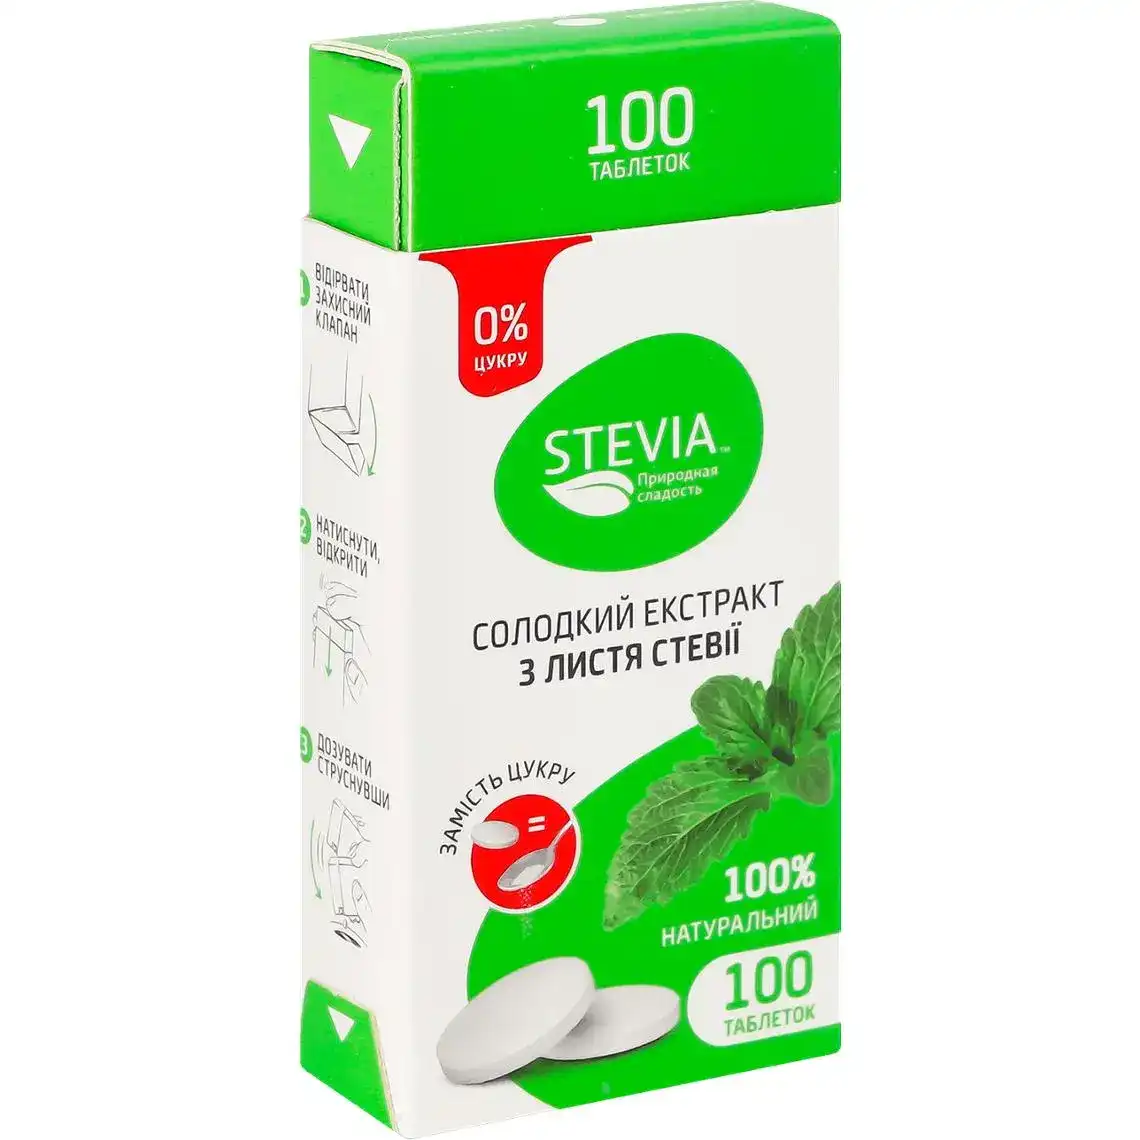 Солодкий екстракт Stevia з листя стевії 100 шт